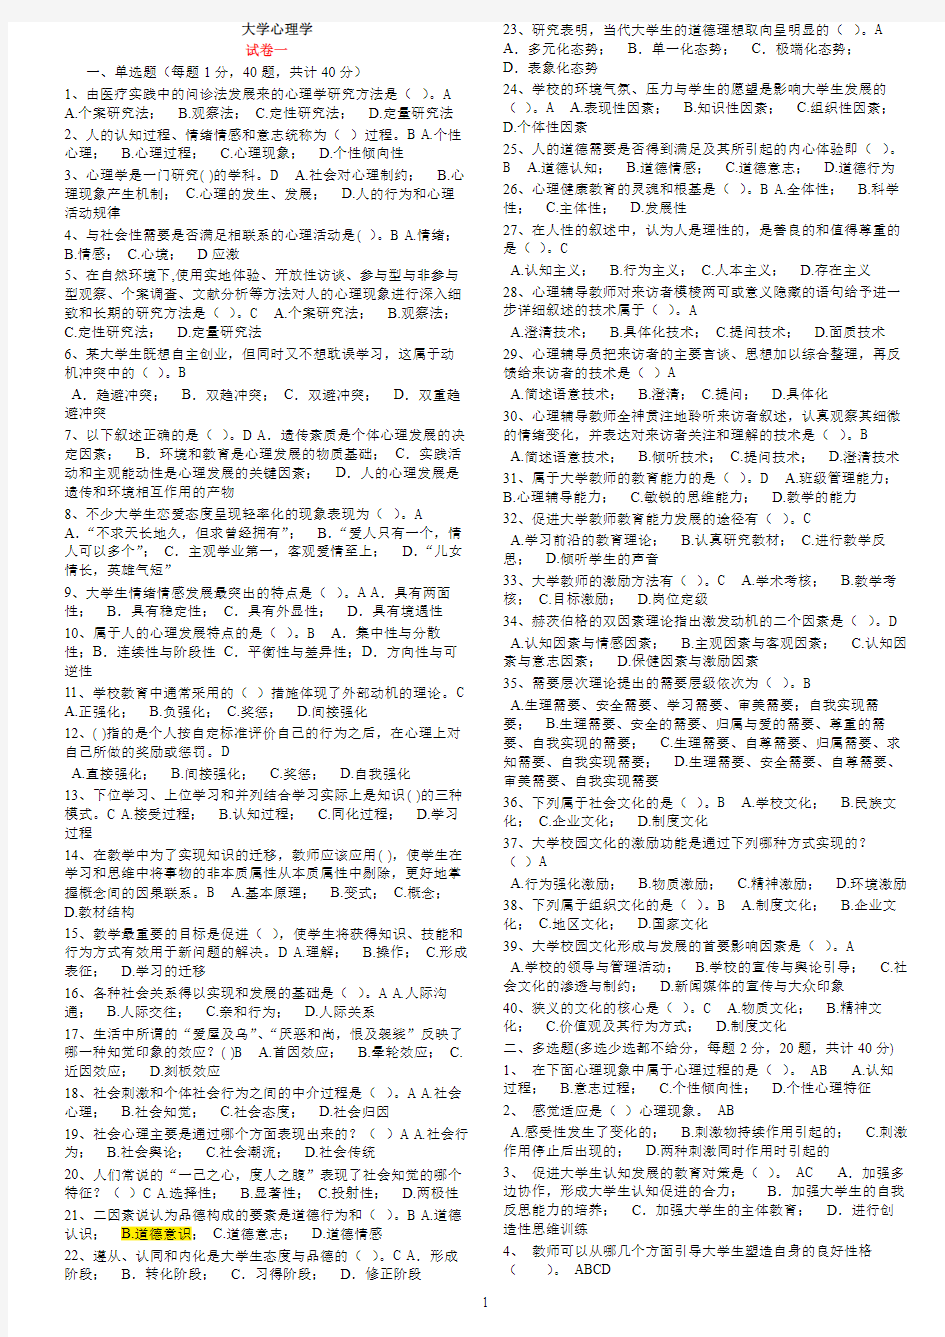 浙江省高校师资培训练习系统80套试题(全部80套原题+答案)